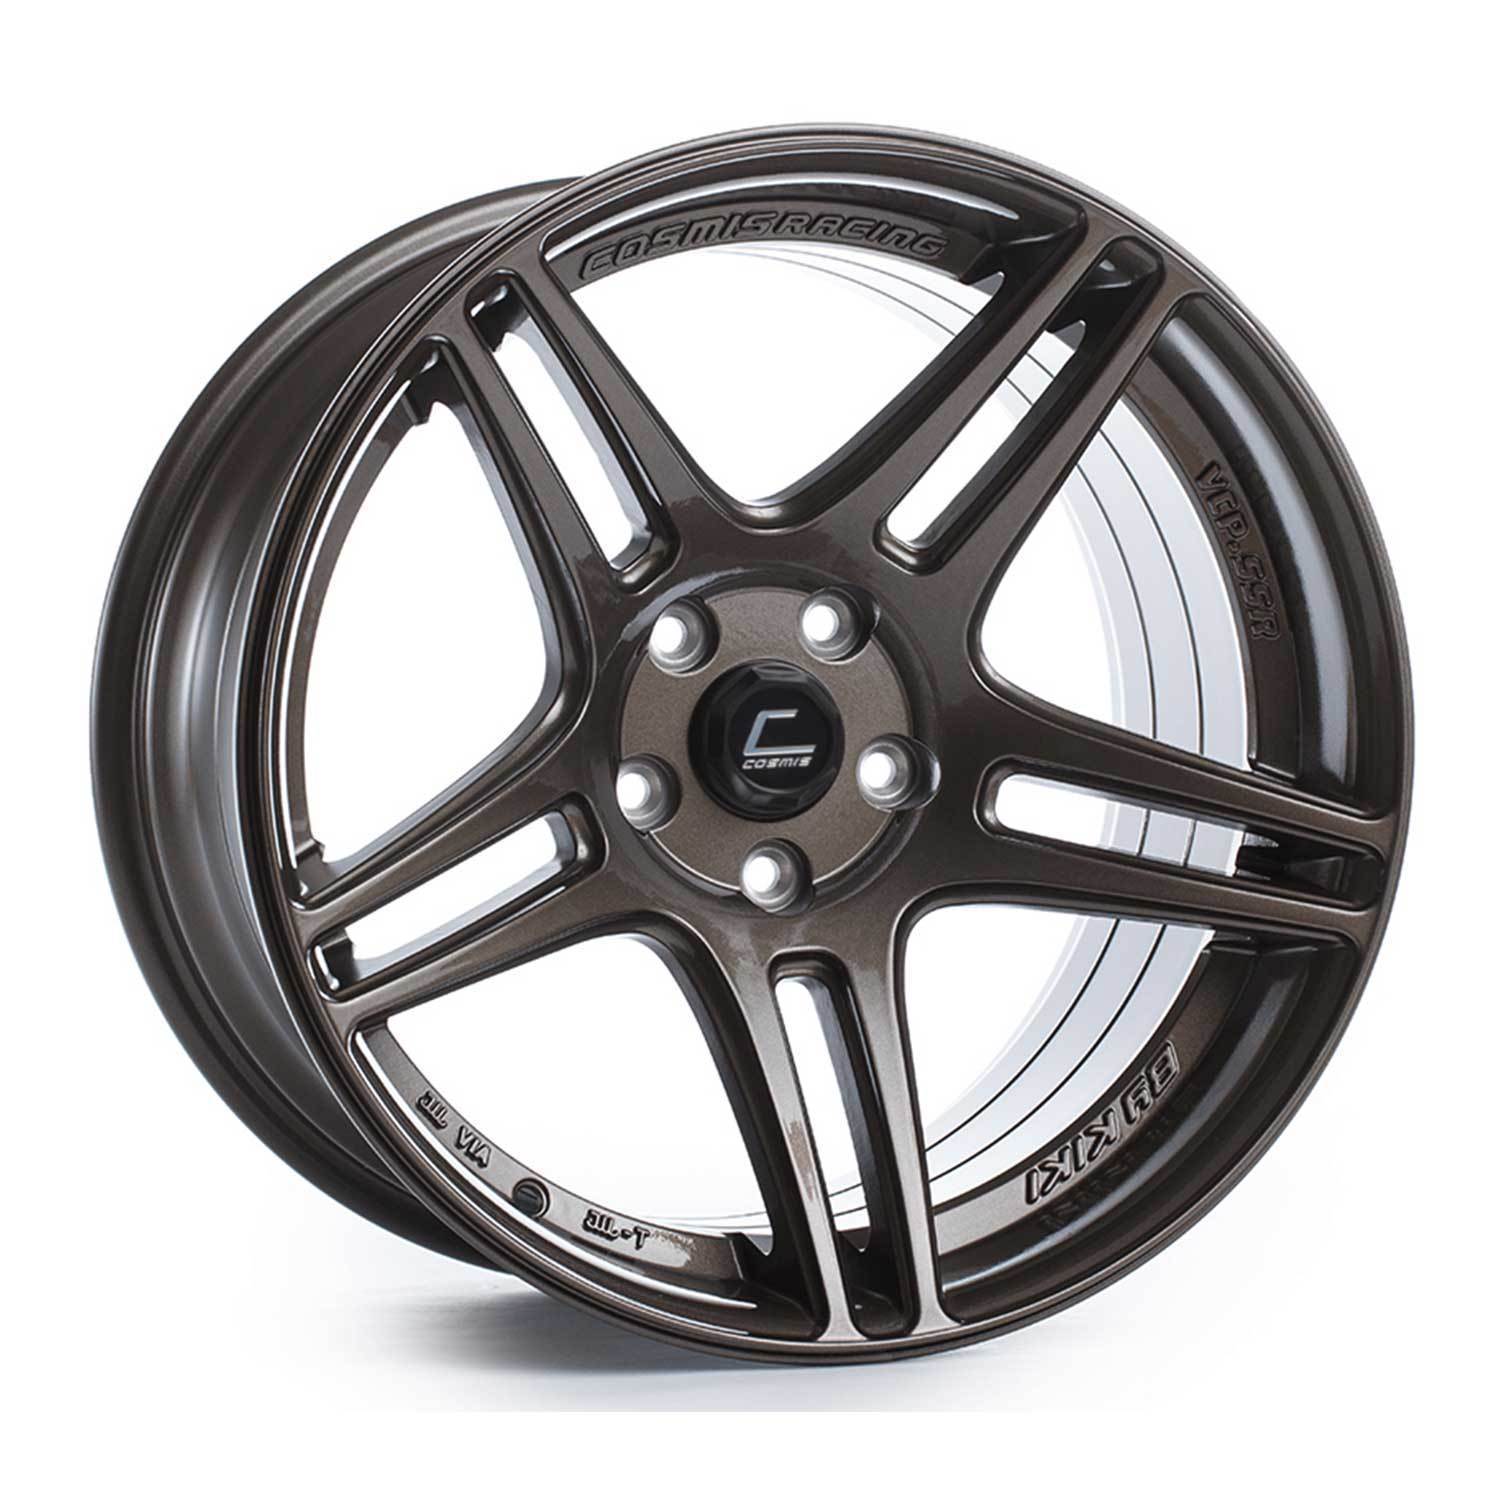 Cosmis Racing S5R Wheel Bronze 17X10 +22mm 5x114.3